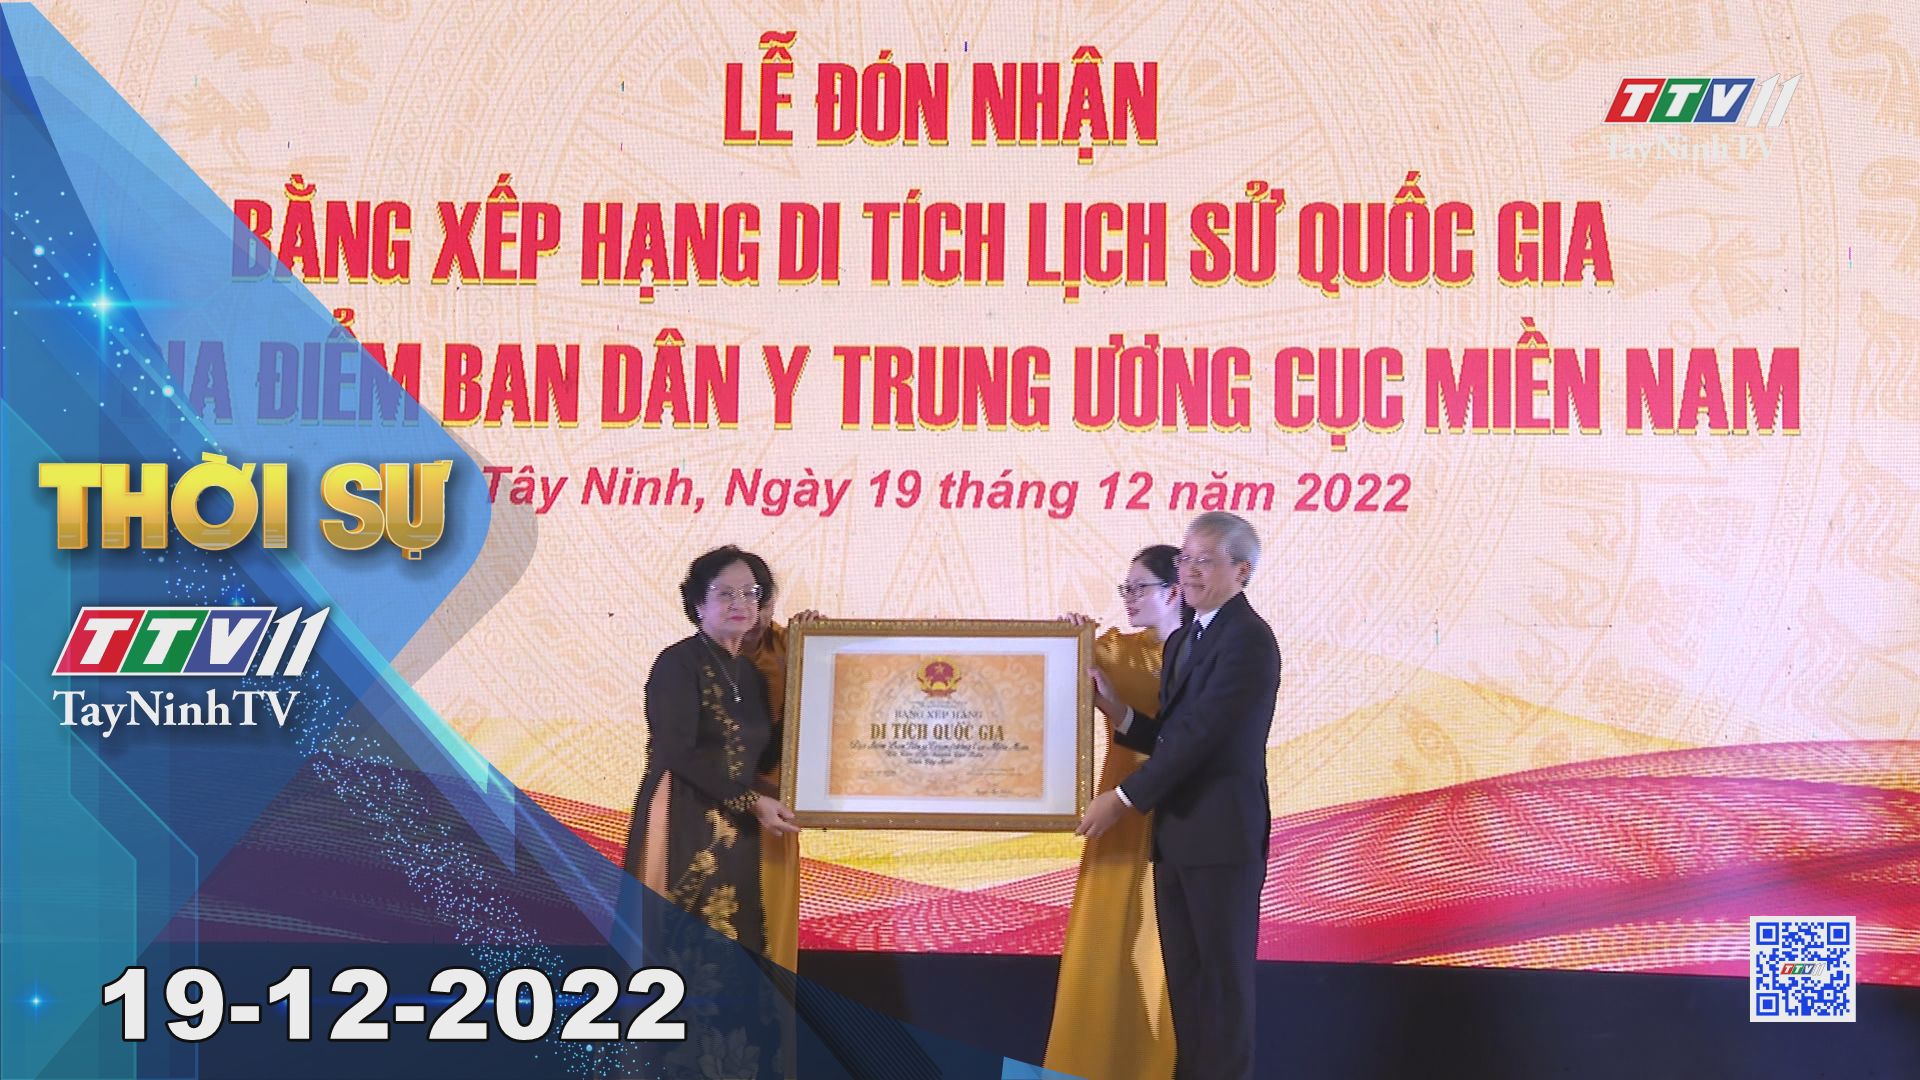 Thời sự Tây Ninh 19-12-2022 | Tin tức hôm nay | TayNinhTV